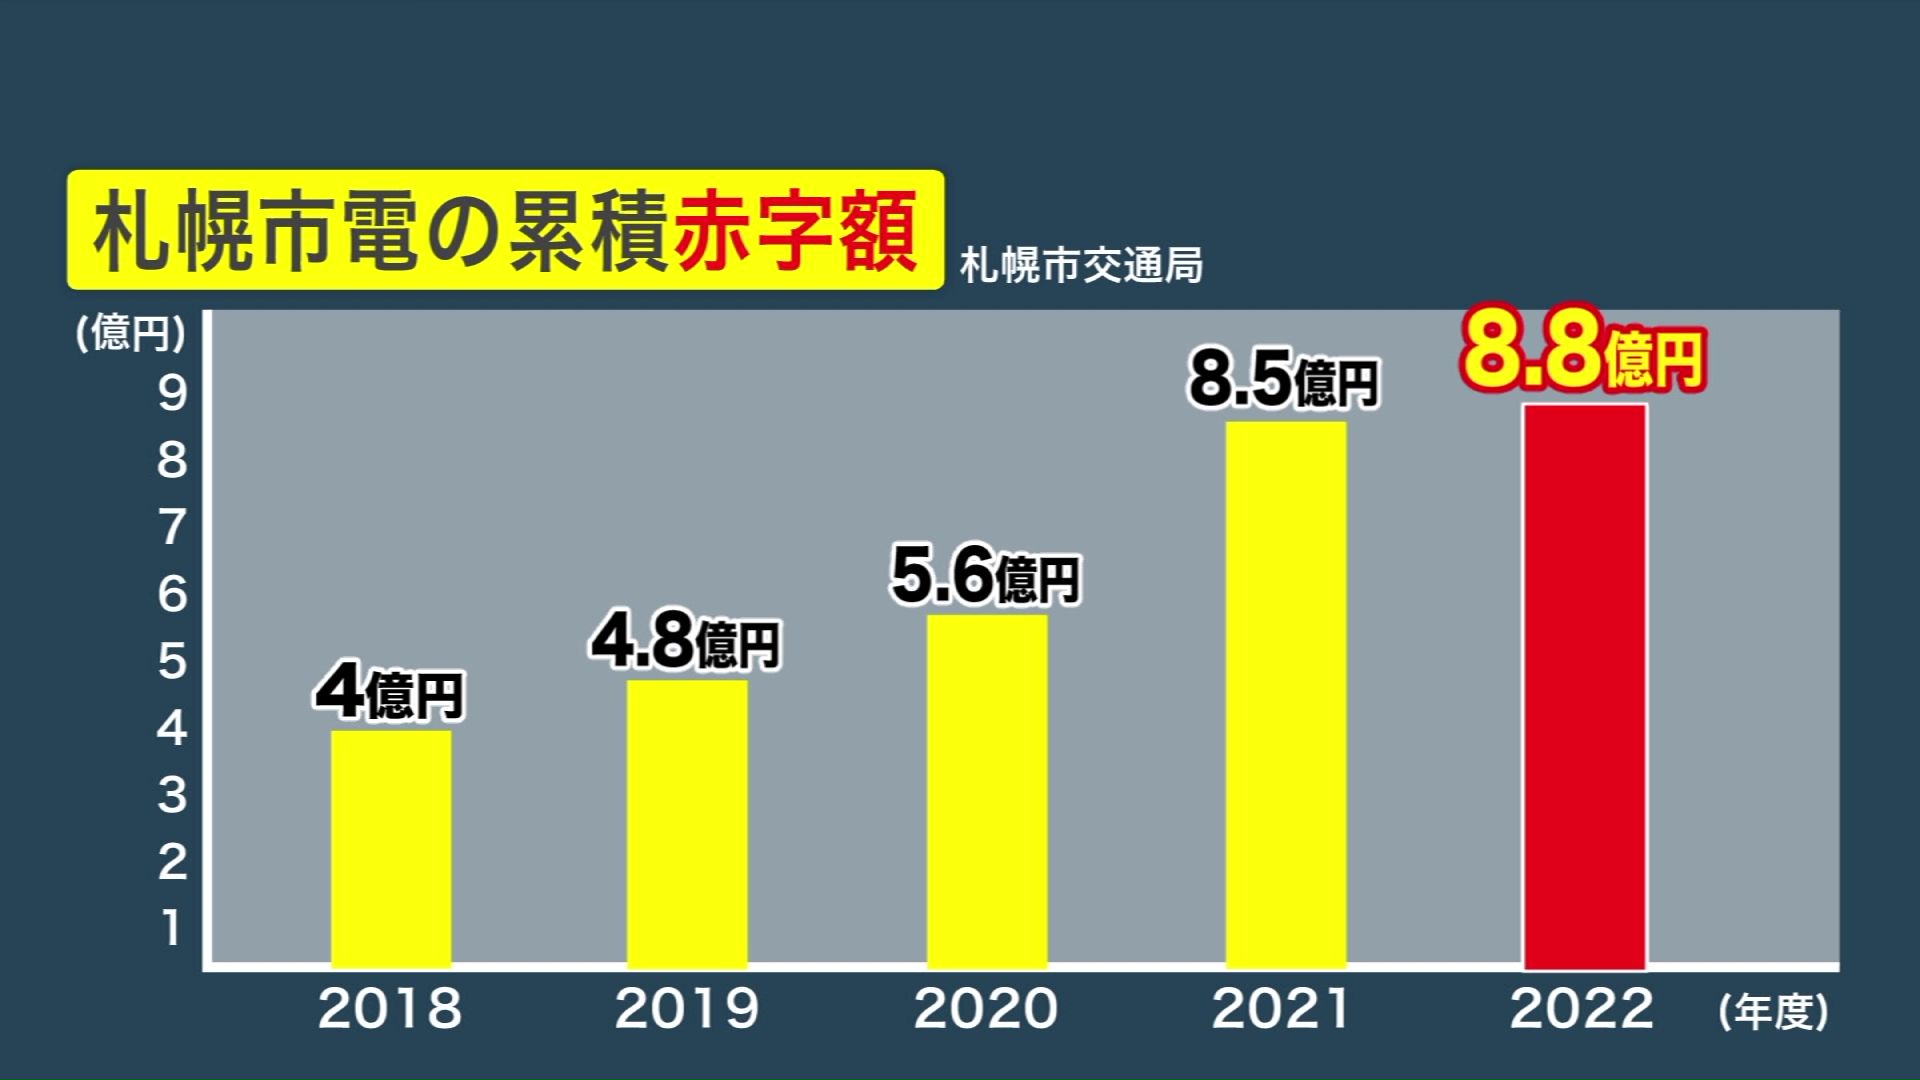 札幌市電の累積赤字額